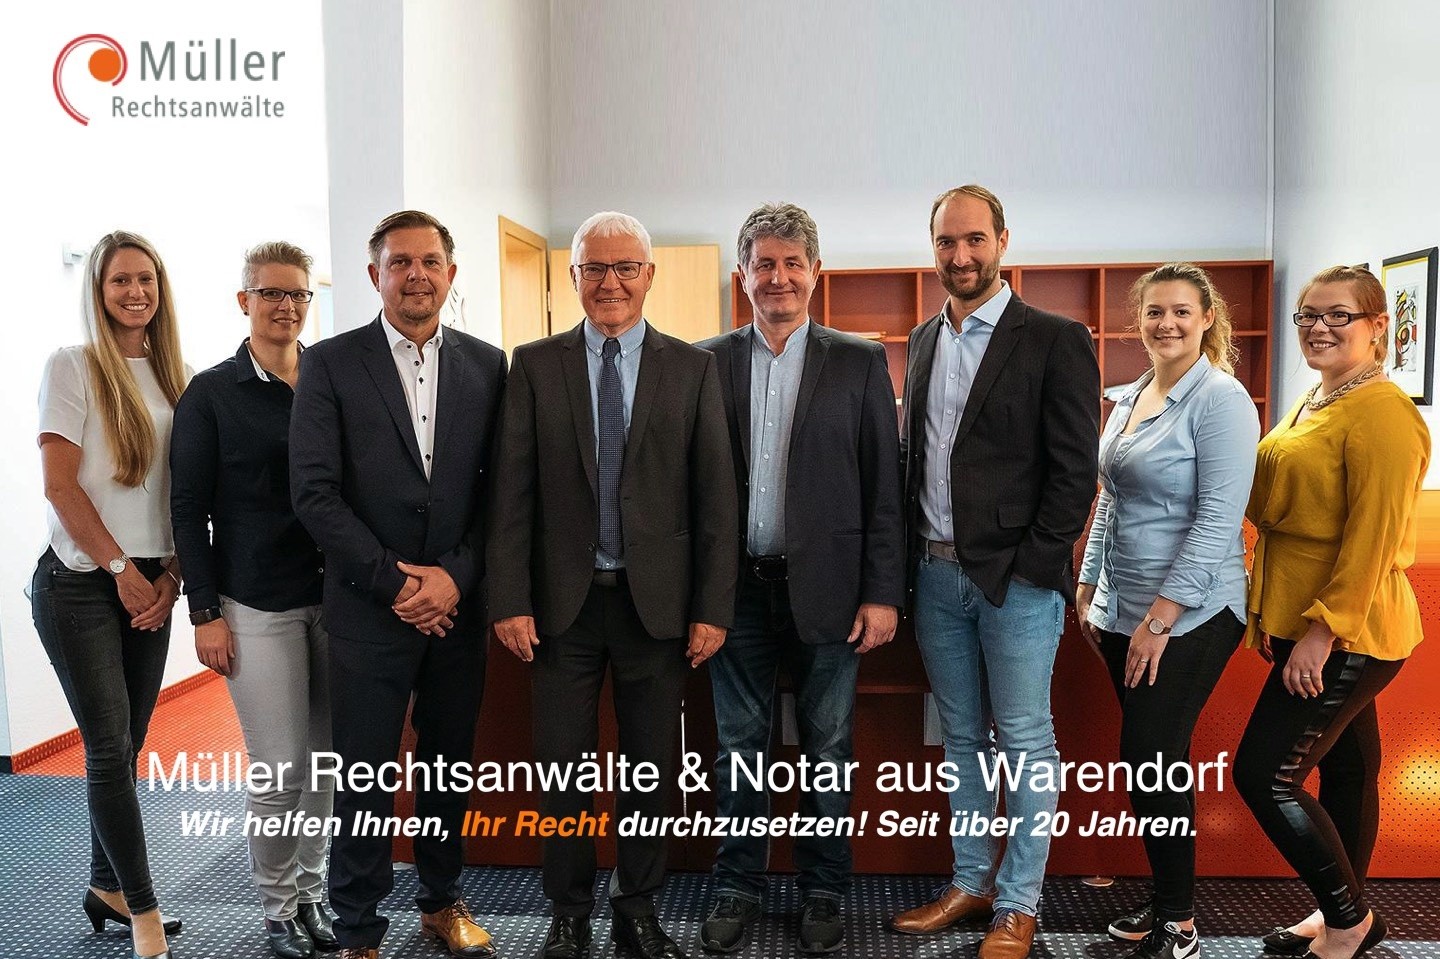 Rechtsanwalt,Müller,Notar,Grundbuch,Warendorf,Rechtsstreit,Kollegen